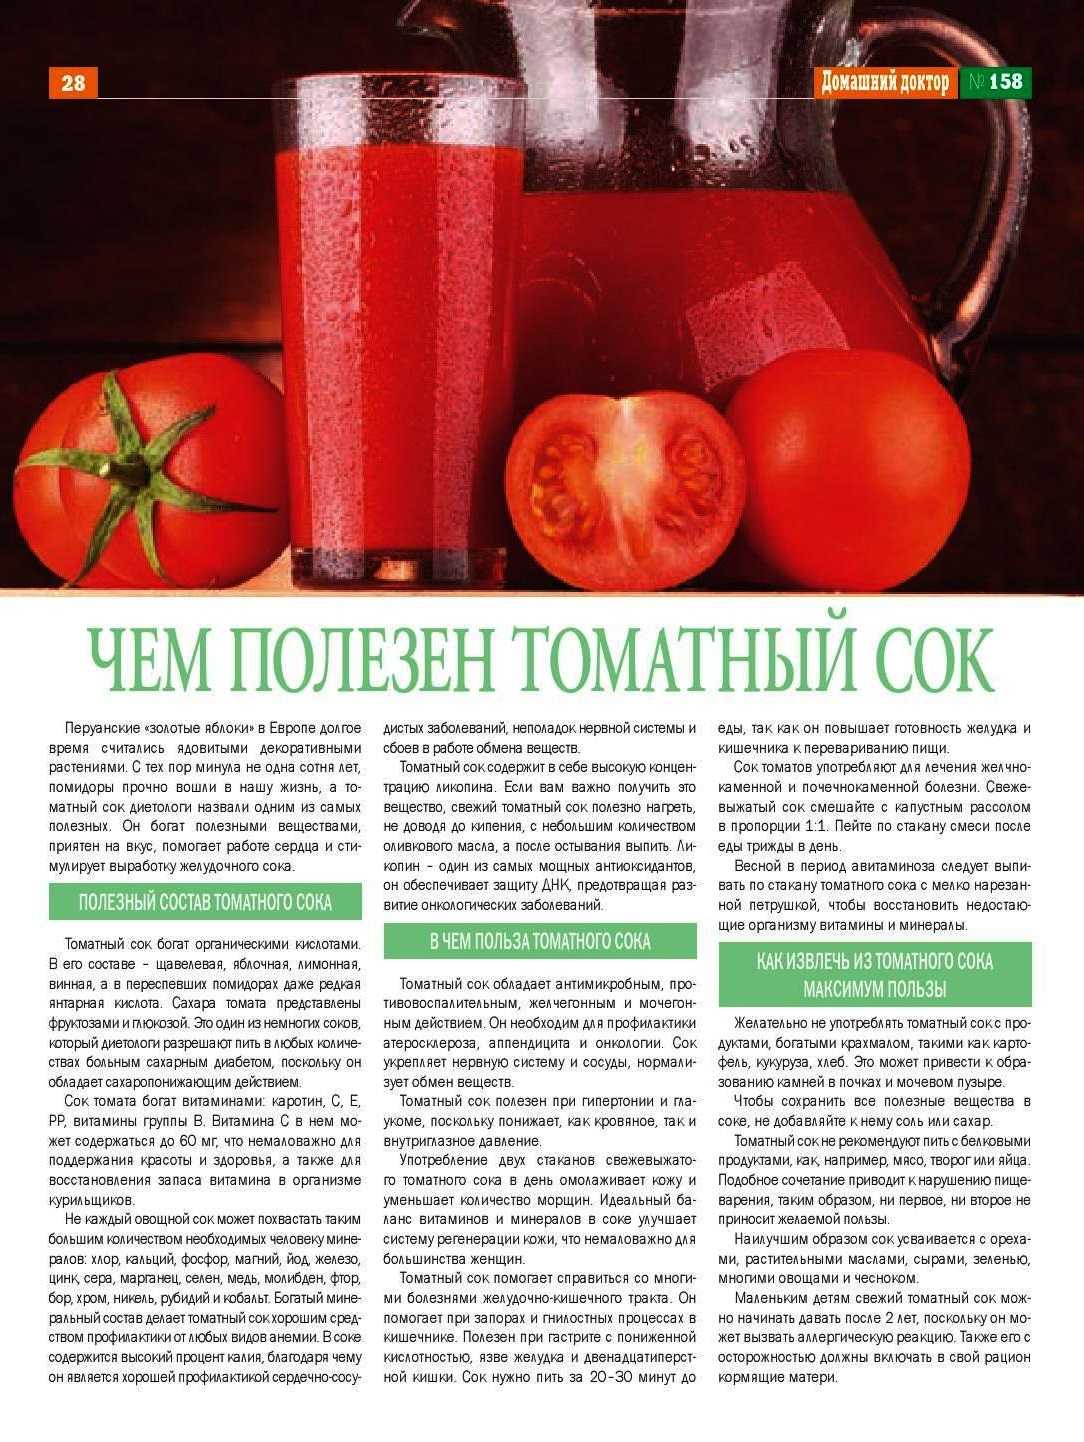 Как пить томатный сок. Чем полезен томатный сок. Чем полезен томатныысок. Чем полезен томатный сок для организма. Сок томатный полезный сок.